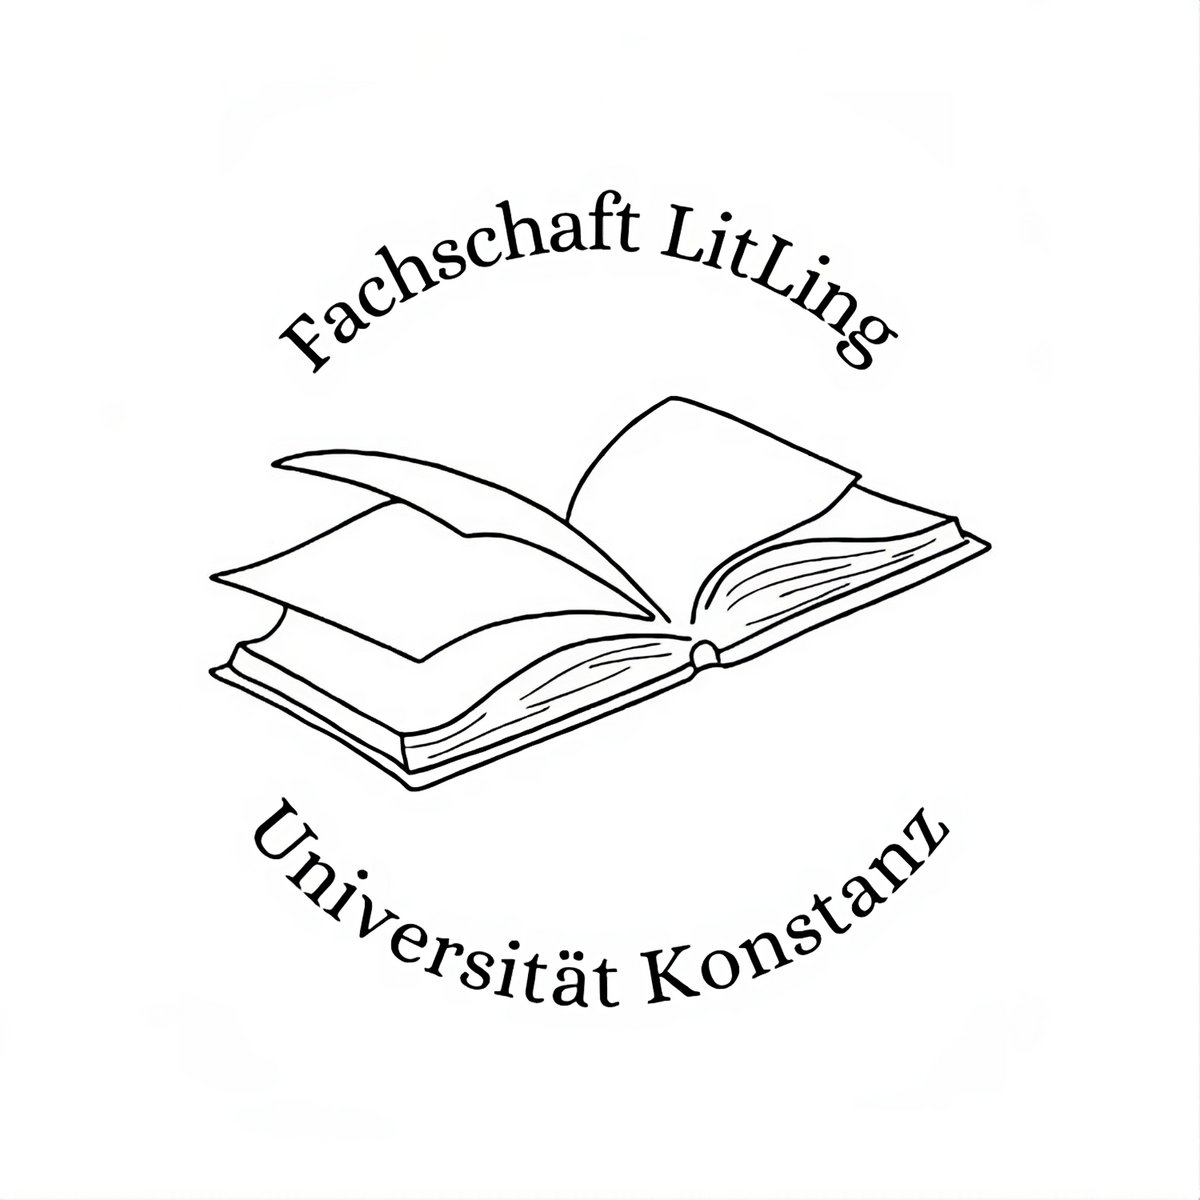 Logo der Fachschaft LitLing: In der Mitte befindet sich eine Zeichnung eines offenen Buches, darüber der Schriftzug "Fachschaft LitLing", darunter "Universität Konstanz".